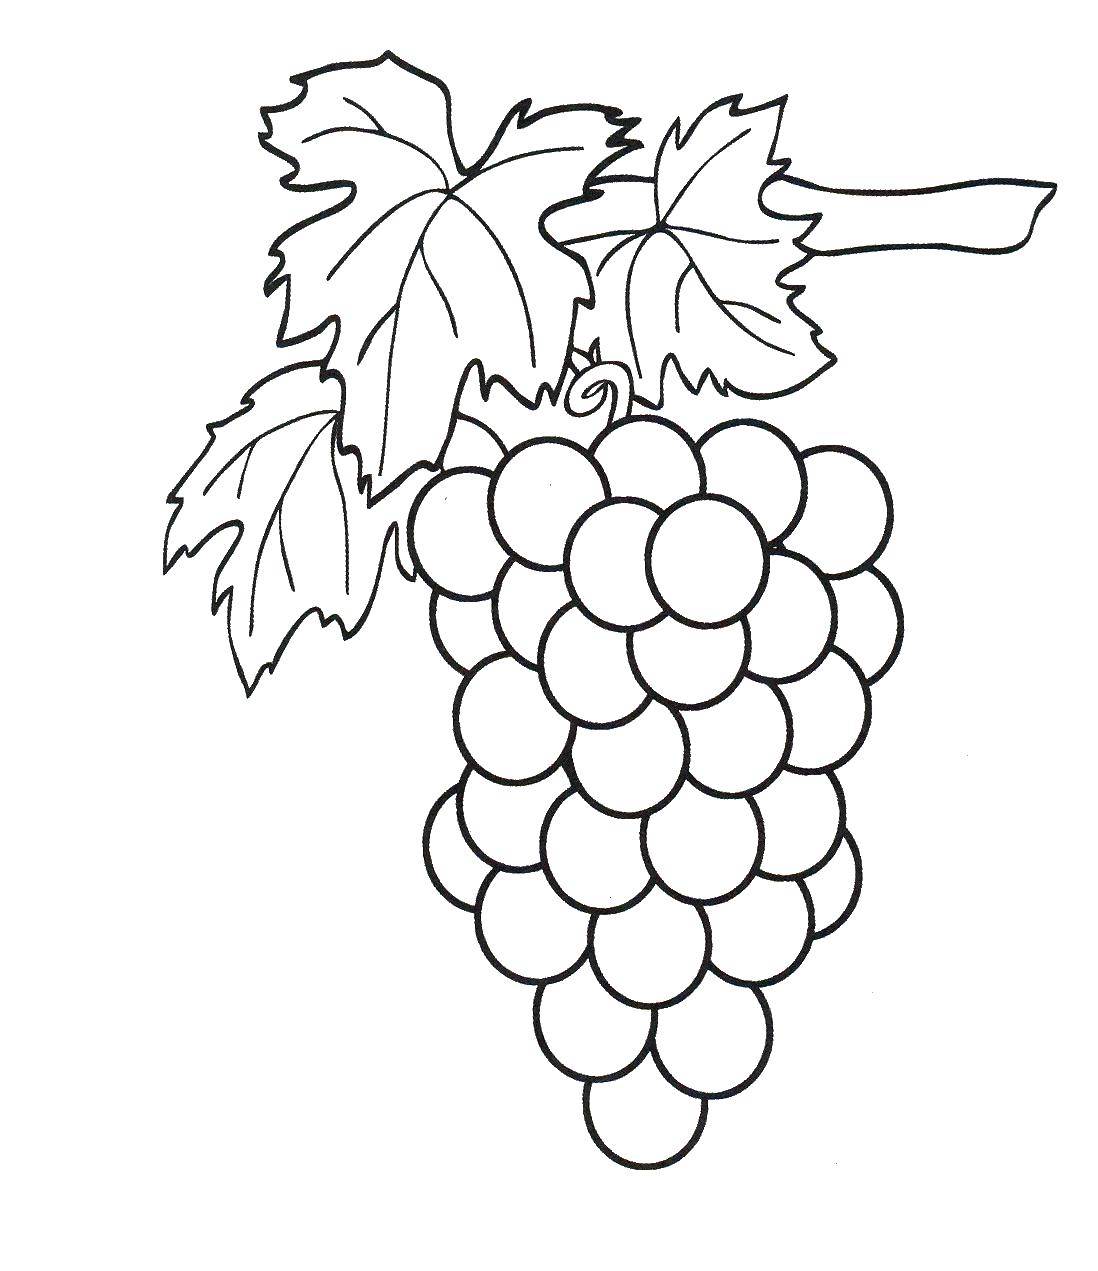 Раскраска с ягодами виноград - развлекательное занятие для детей (ягоды, виноград, занятие, праздники)